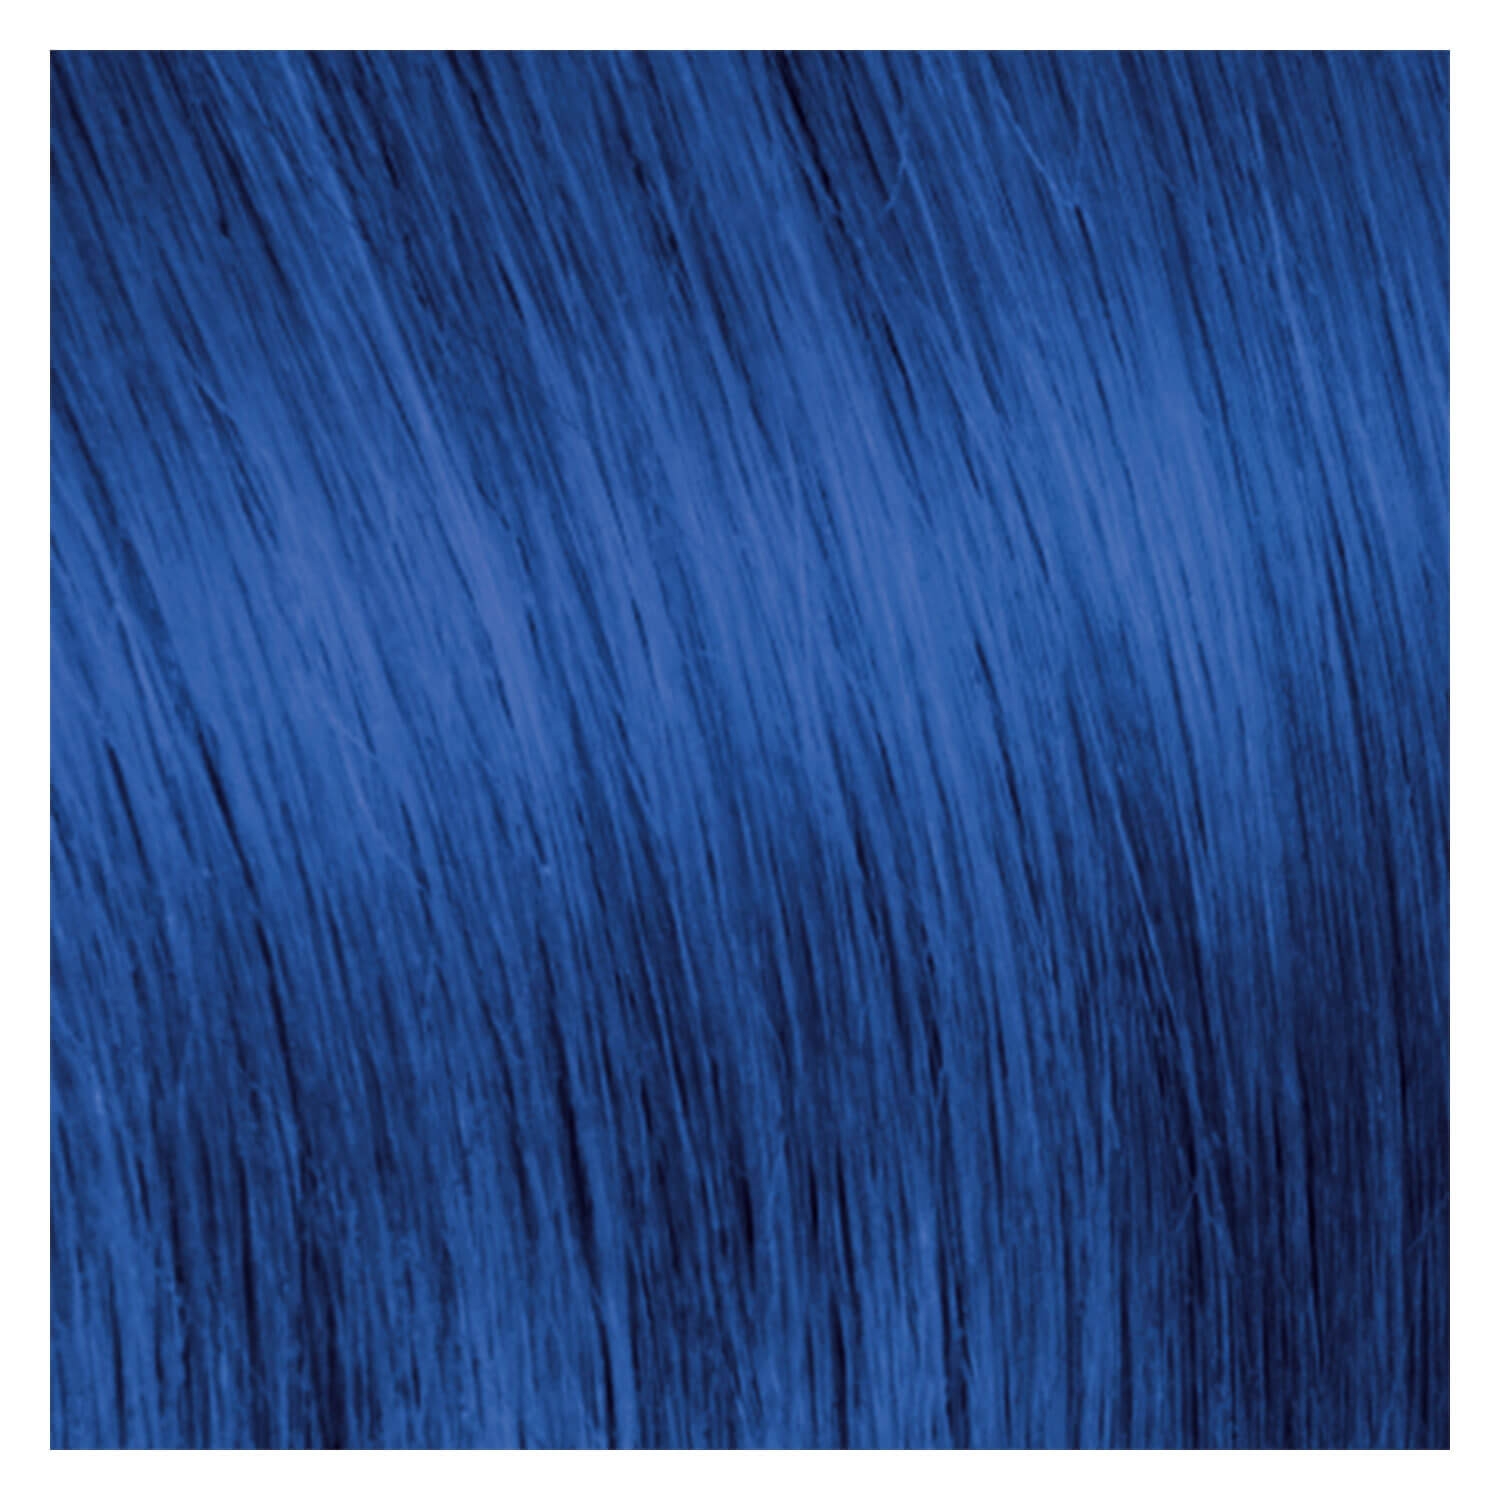 Produktbild von SHE Tape In-System Hair Extensions Straight - Blau 55/60cm